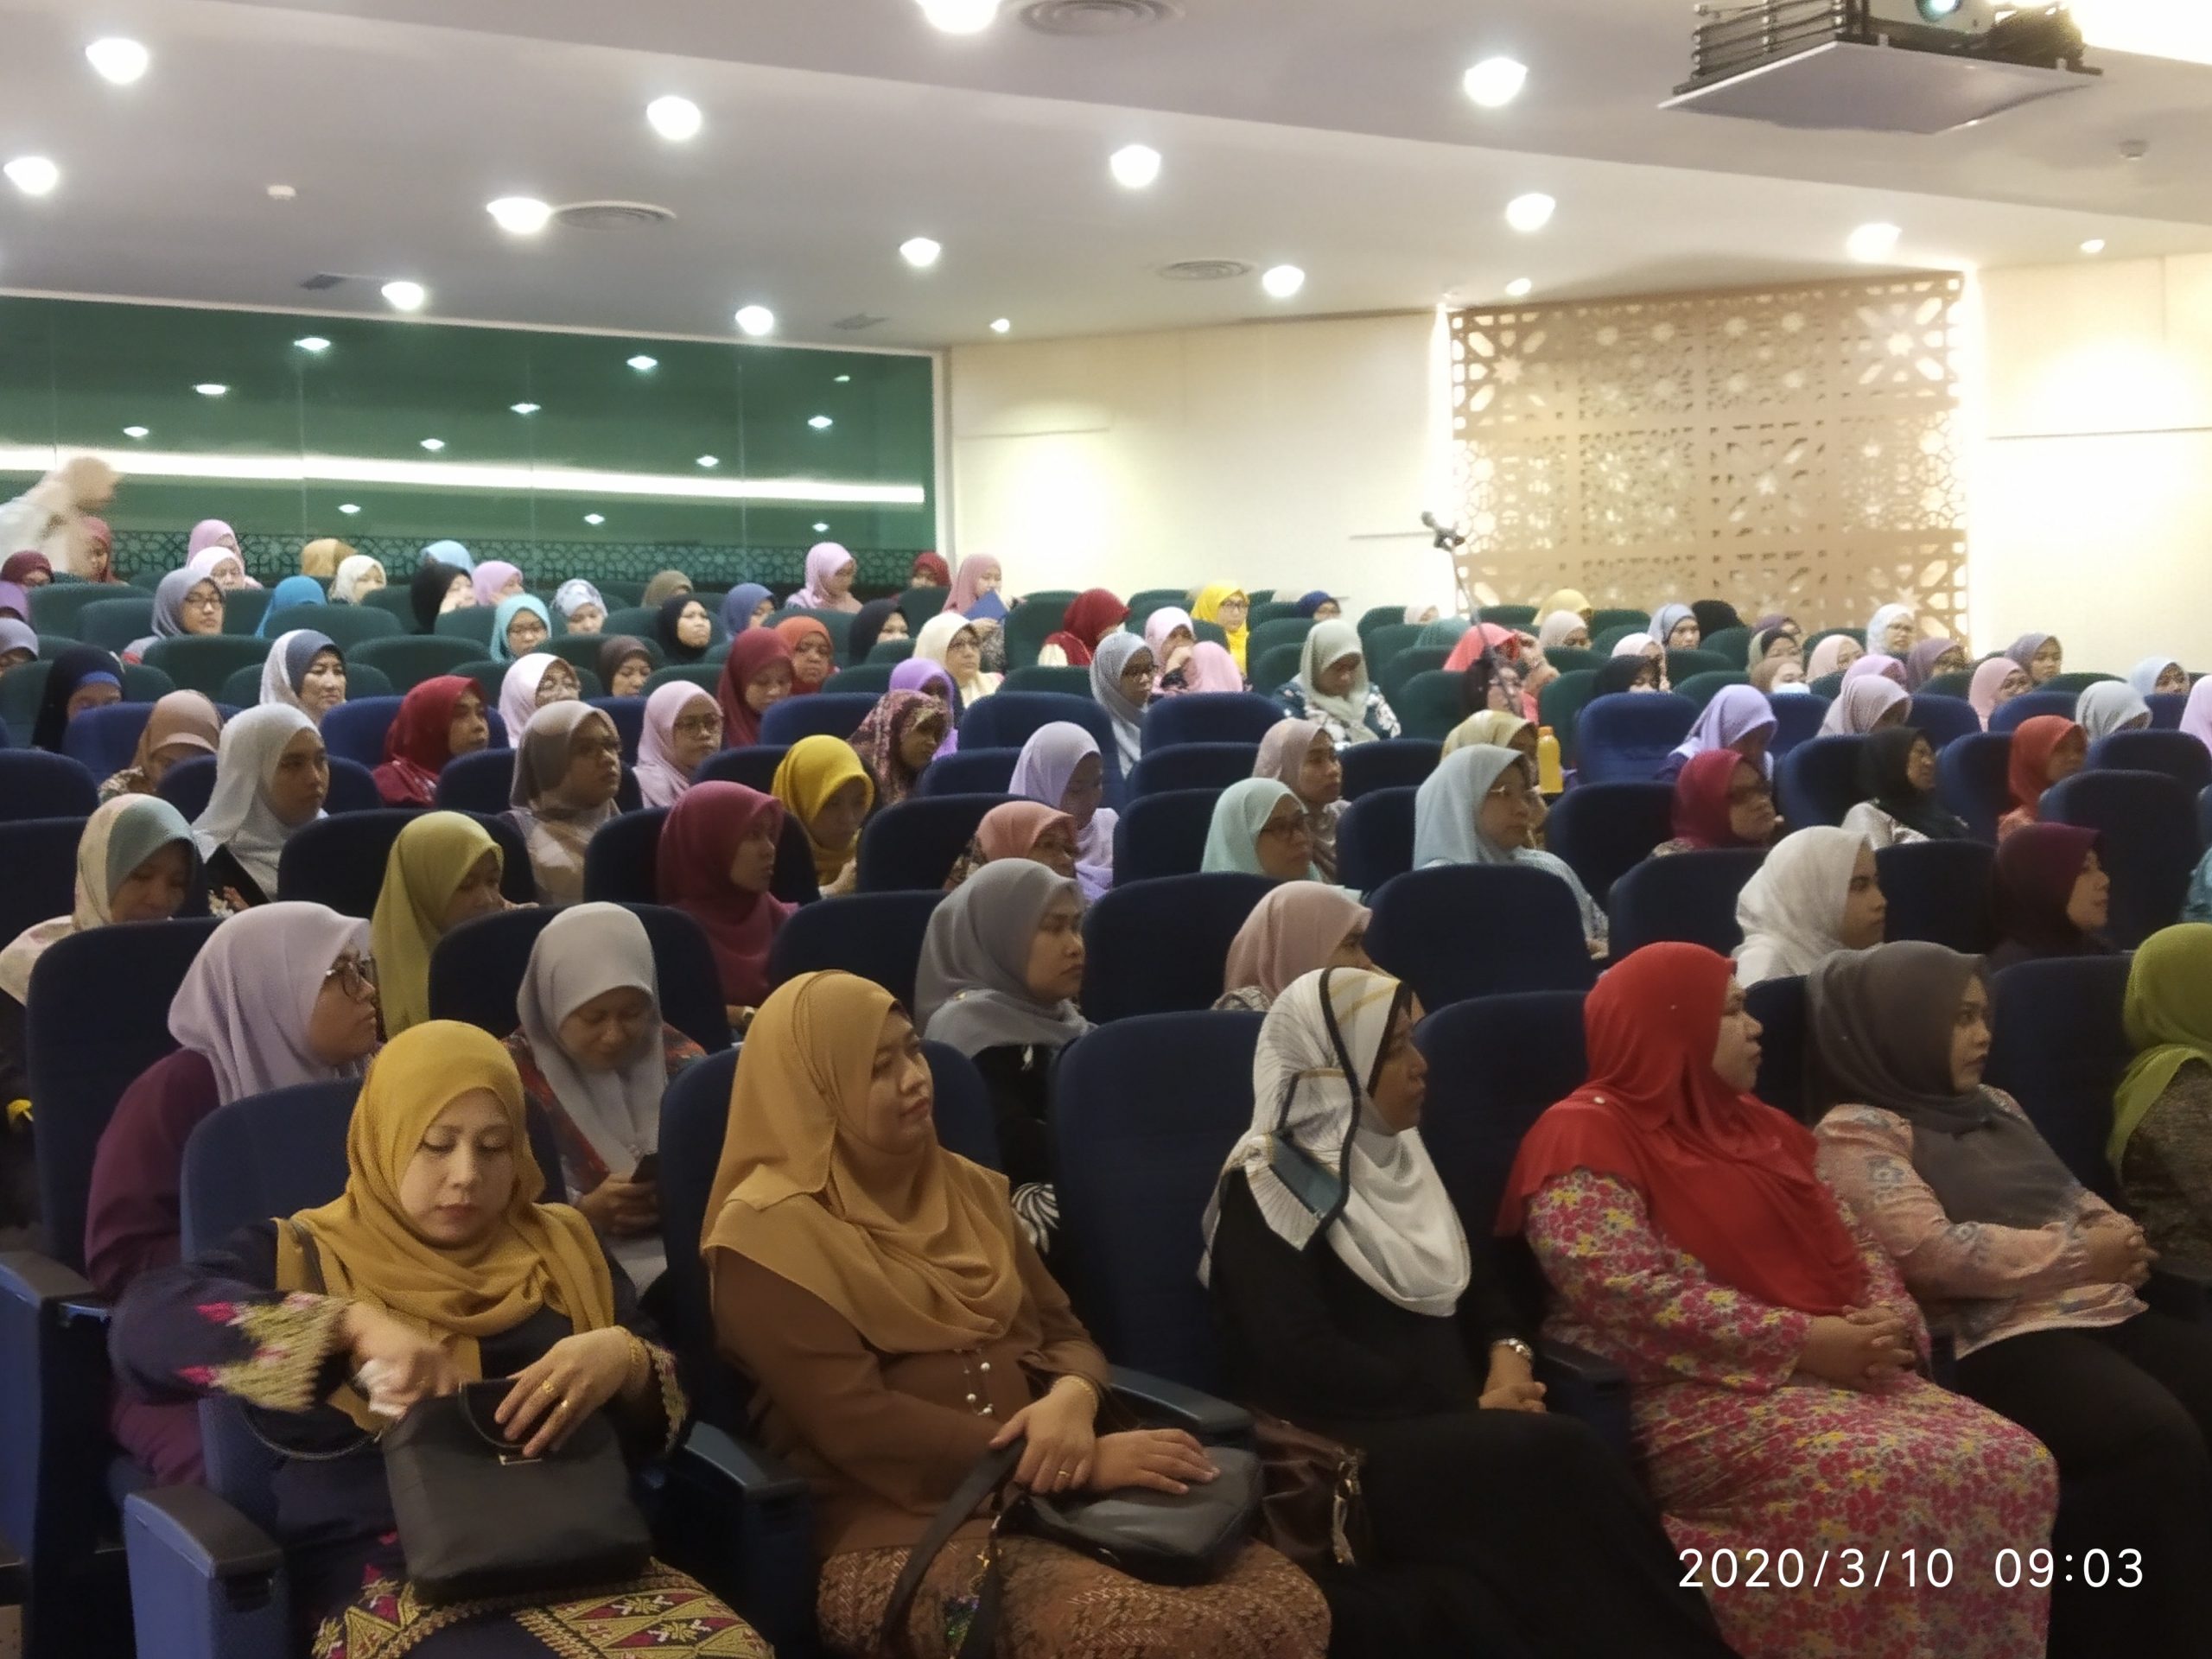 BICARA HAWA : WANITA DAN UNDANG-UNDANG - Pusat Islam